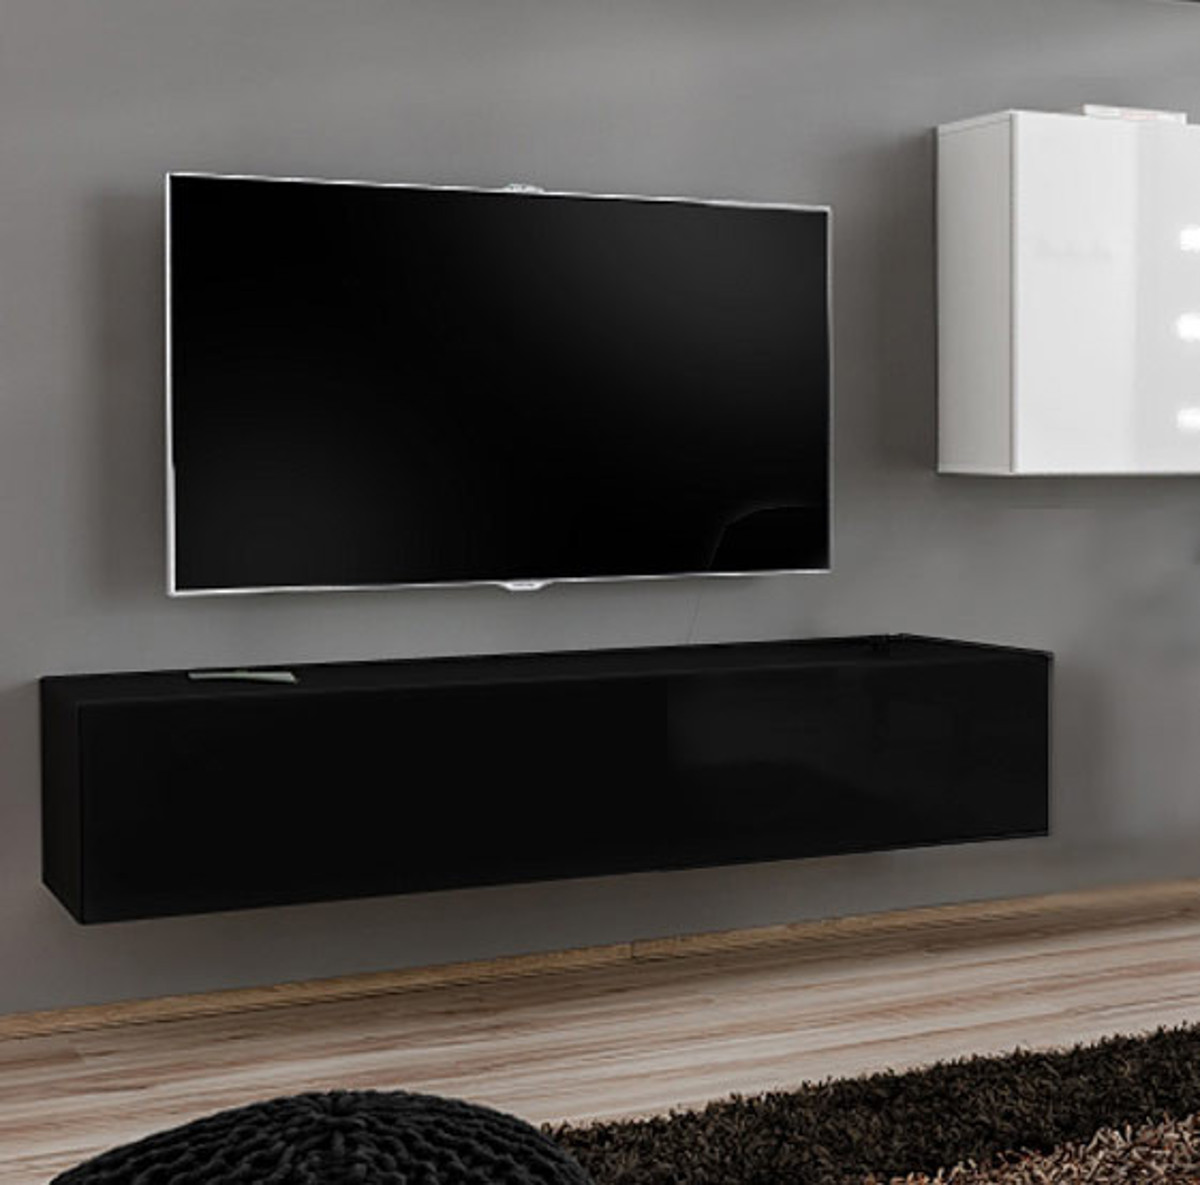 Imagen de Mueble TV modelo Baza 120x30 en color negro